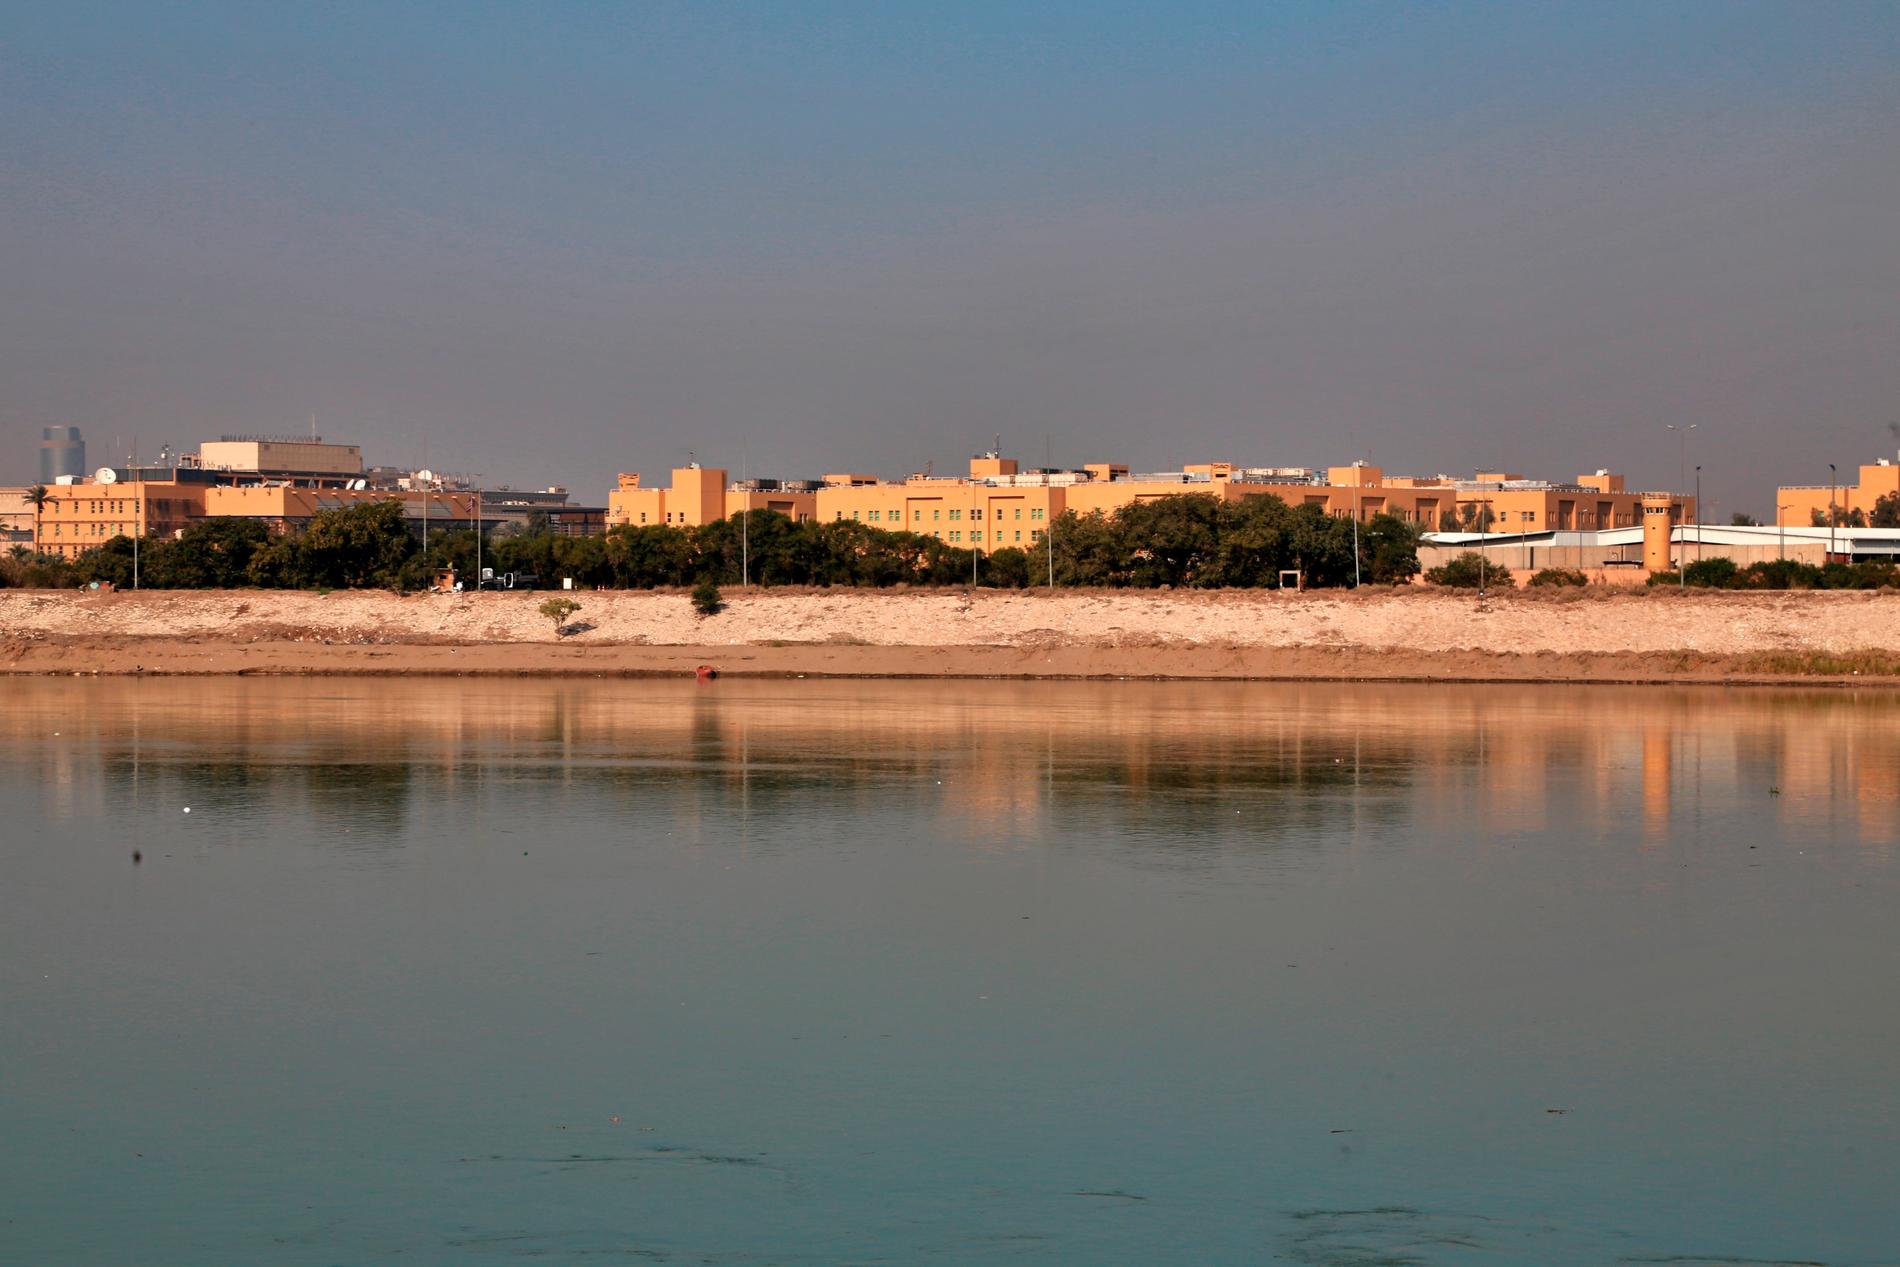 Raket ska ha träffat USA:s ambassad I Bagdad, som här syns på andra sidan av floden Tigris tidigare i januari.